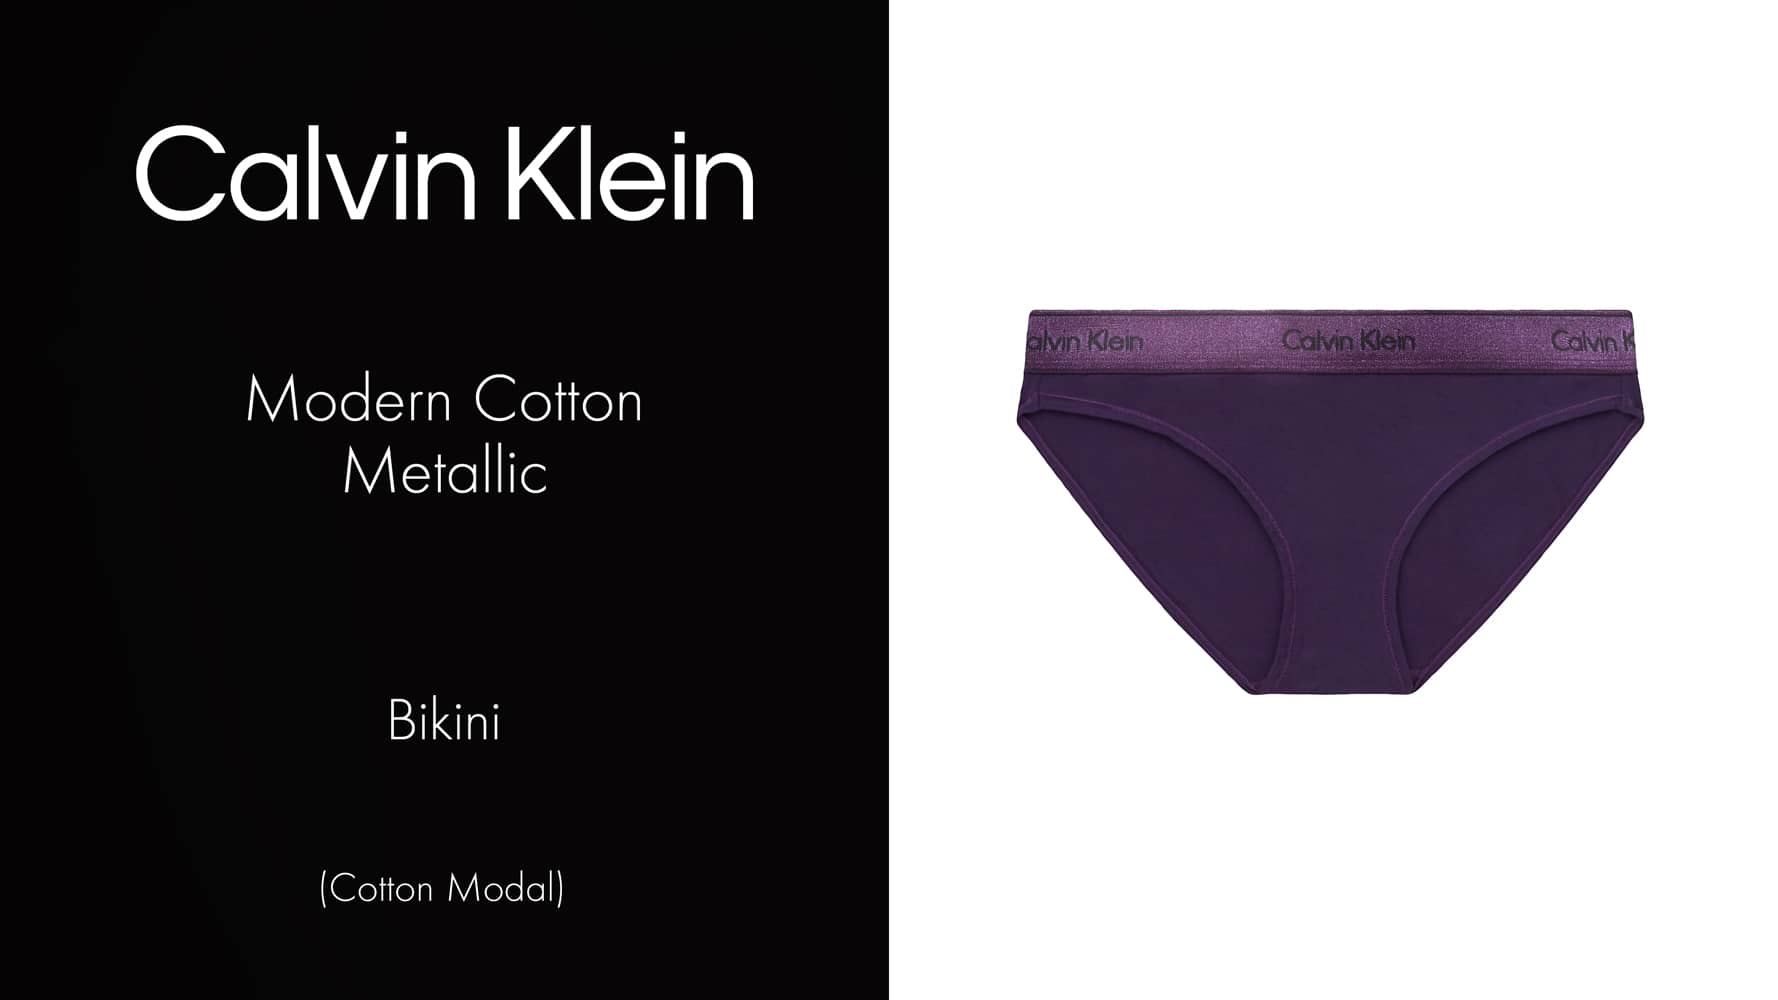 Bikini - Modern Cotton